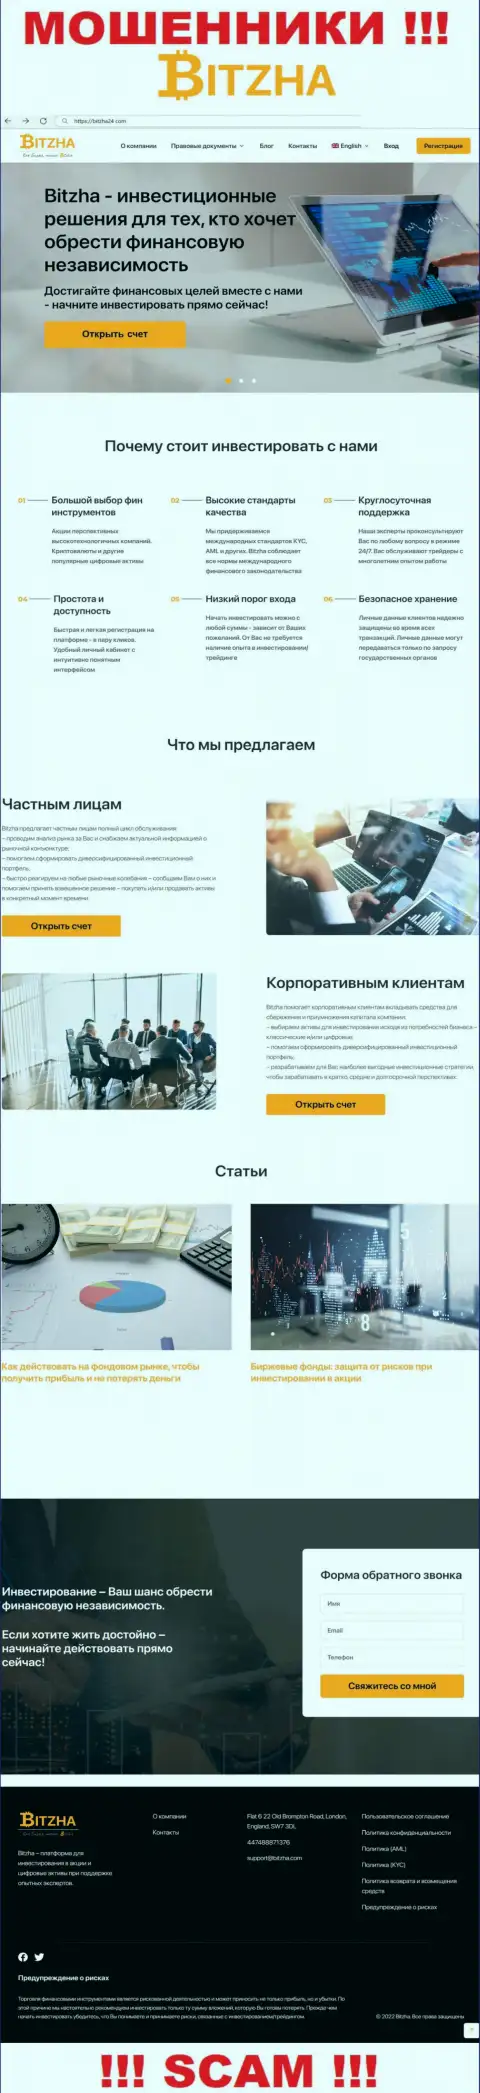 На официальном онлайн-сервисе Bitzha 24 лохов раскручивают на вложение денежных средств